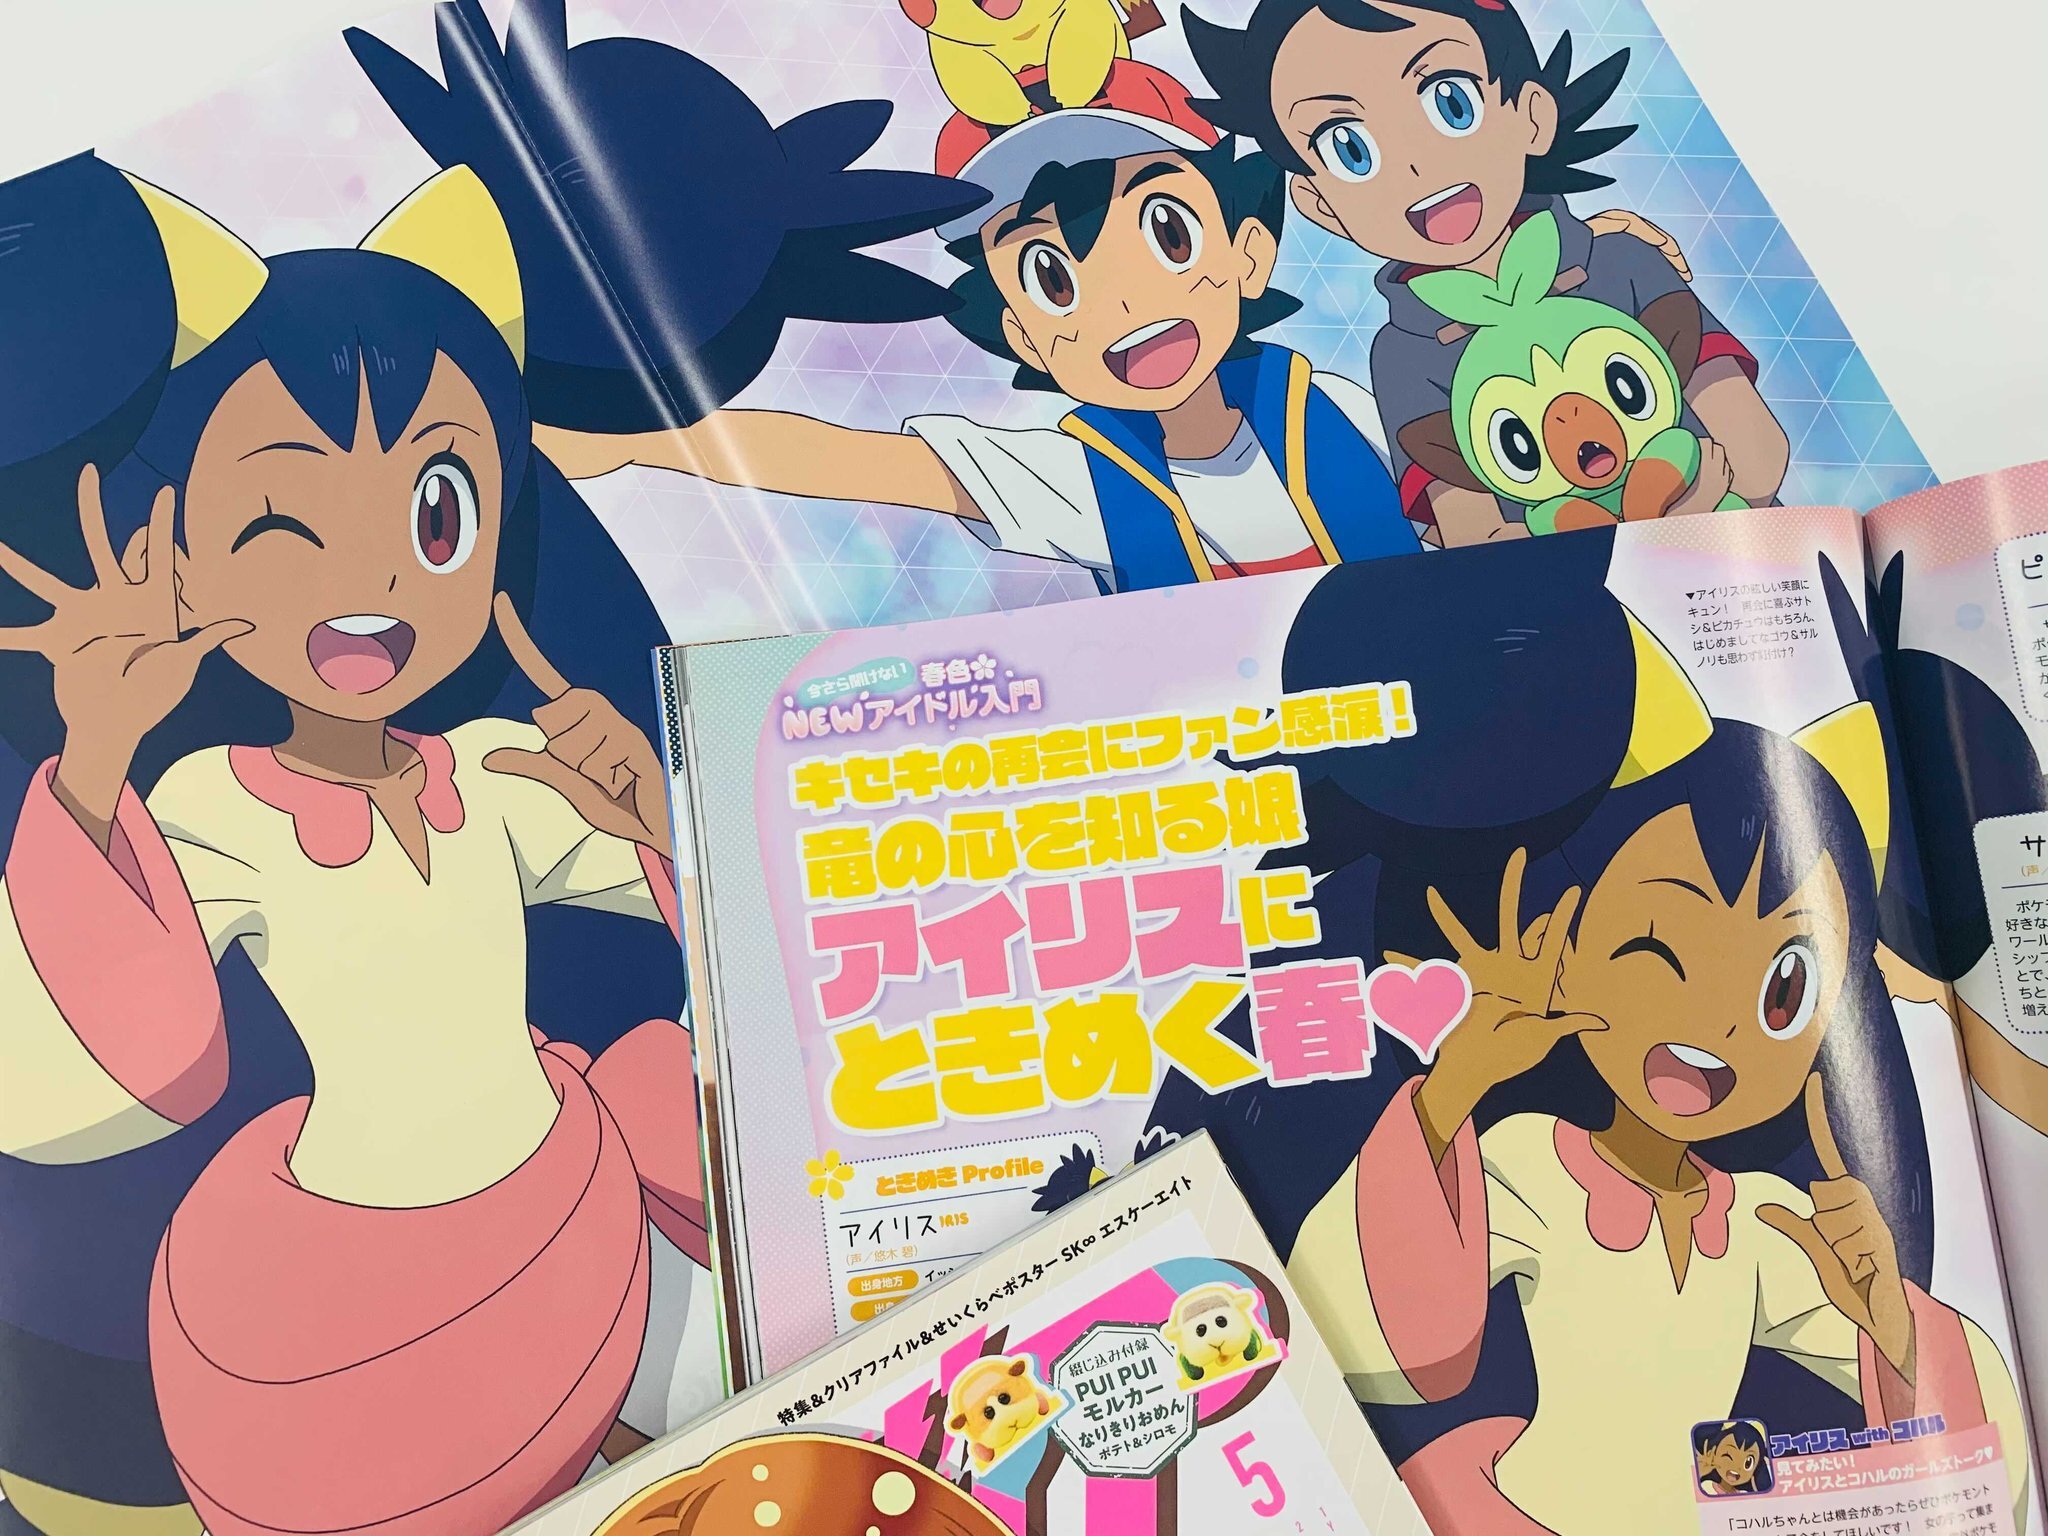 ◓ Anime Pokémon Journeys (Especial Ash Ketchum) • Último Episódio 148:  Pocket Monsters: O Arco-íris e o Mestre Pokémon! (EP11)